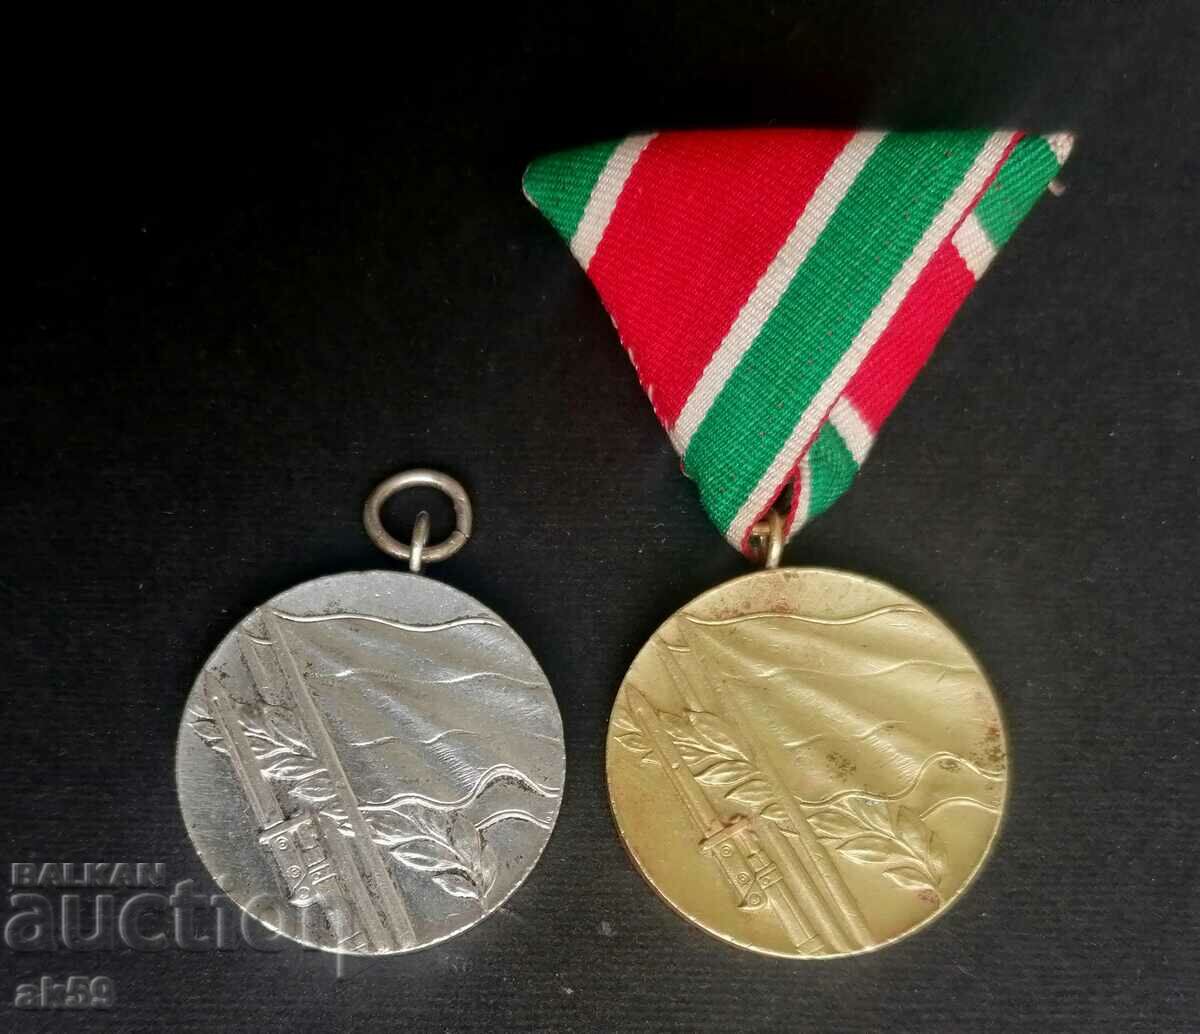 Σπάνιο μετάλλιο "Πατριωτικός Πόλεμος 1944-1945" - κίτρινο μέταλλο.